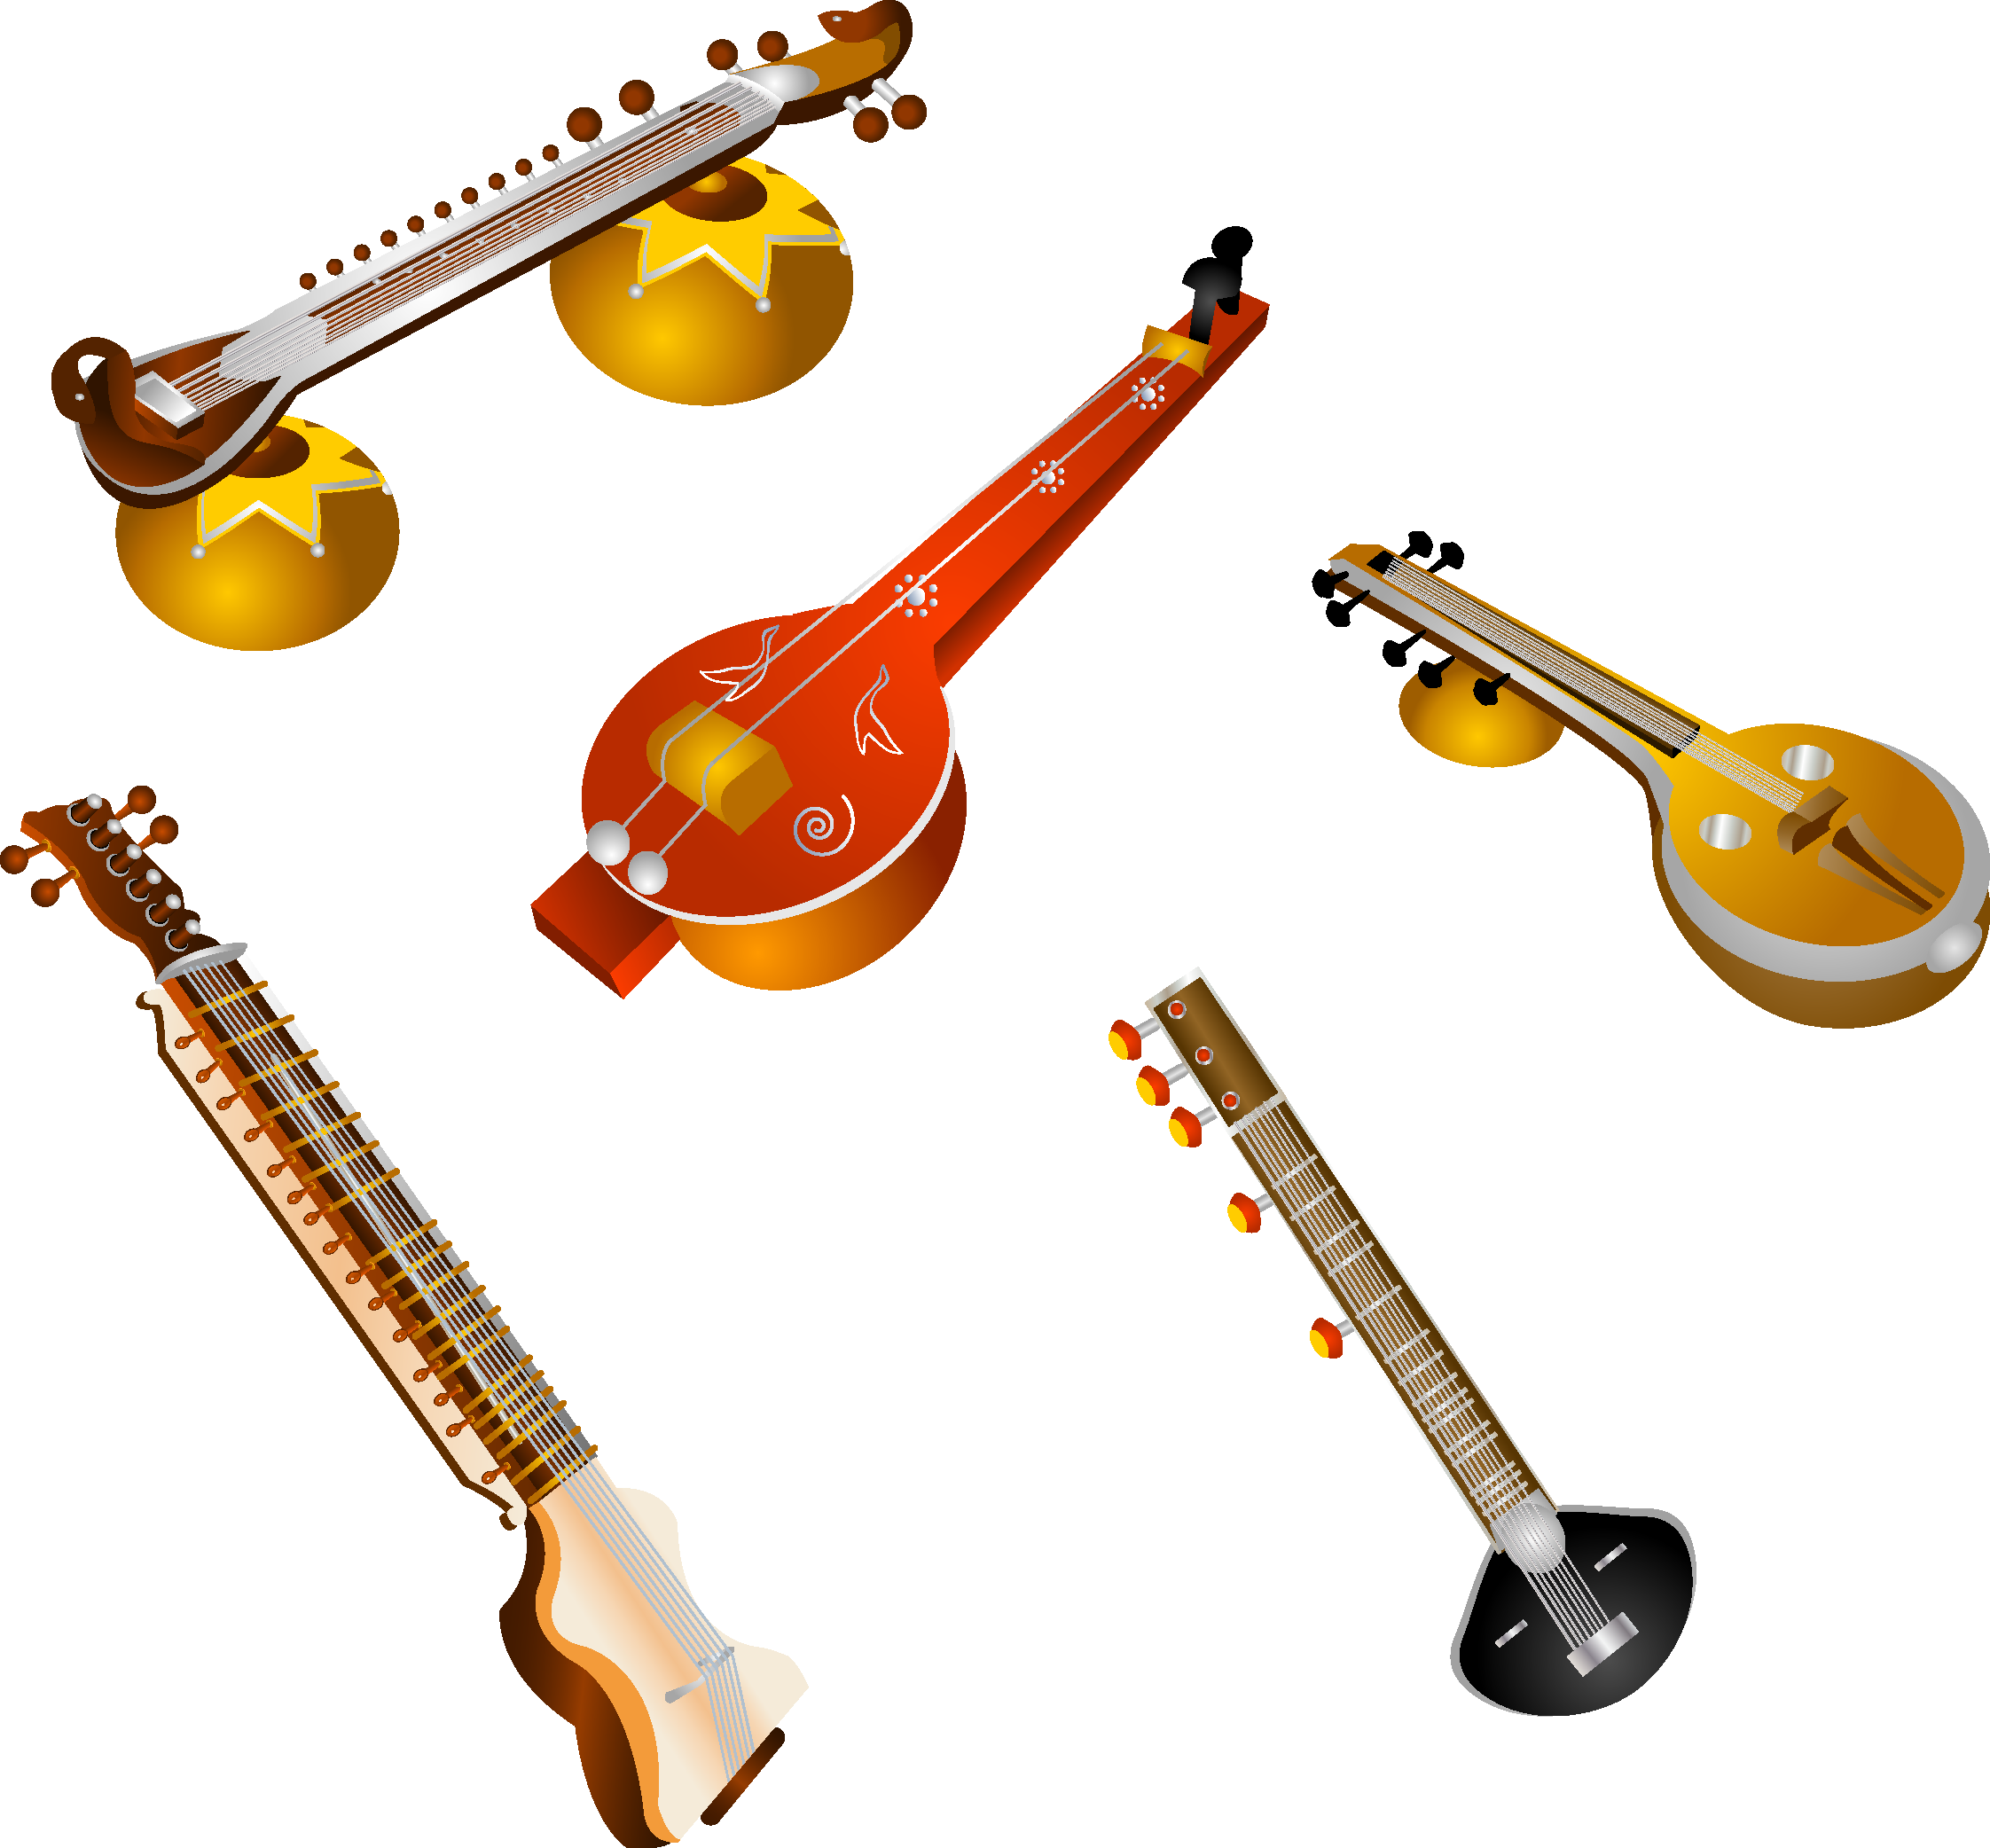 Музыкальный инструмент балла. Музыкальные инструменты. Цветные музыкальные инструменты. Музыкальные инструменты для детей на прозрачном фоне. Музыкальные инструменты на белом фоне.